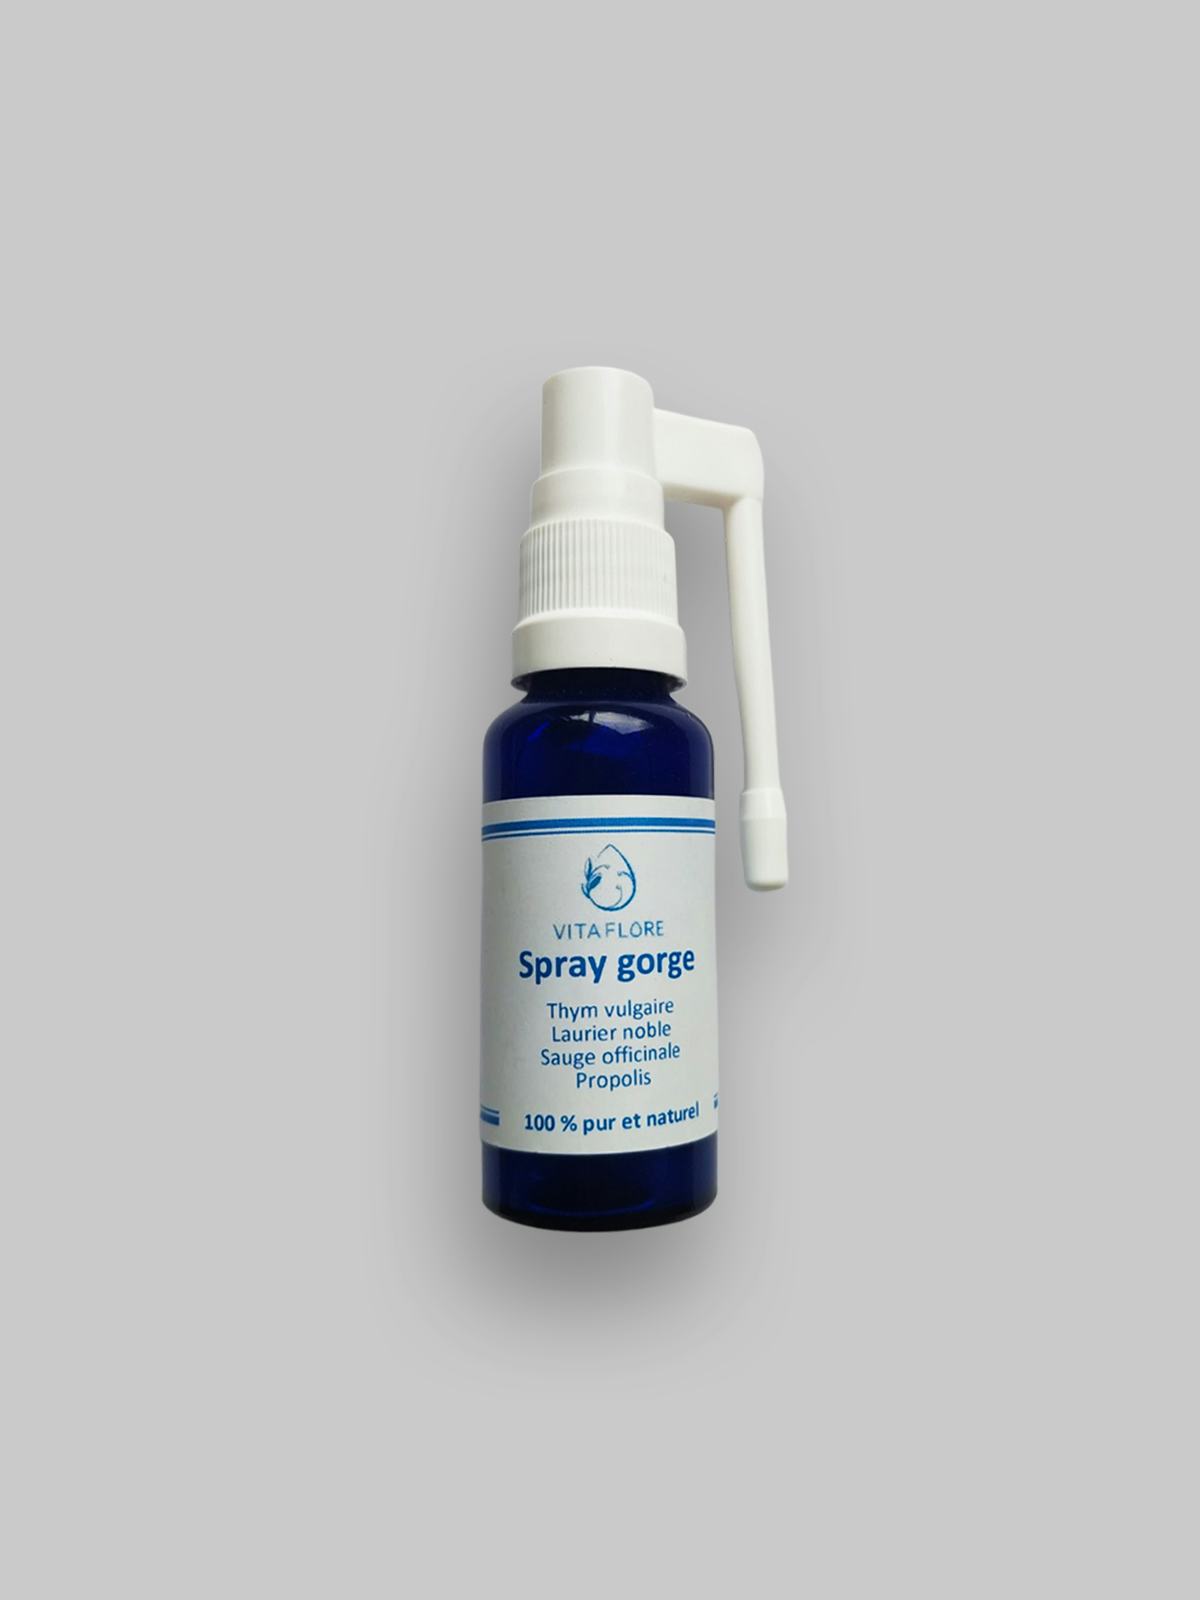 Spray gorge, handwerkliches Produkt für den Direktverkauf in der Schweiz